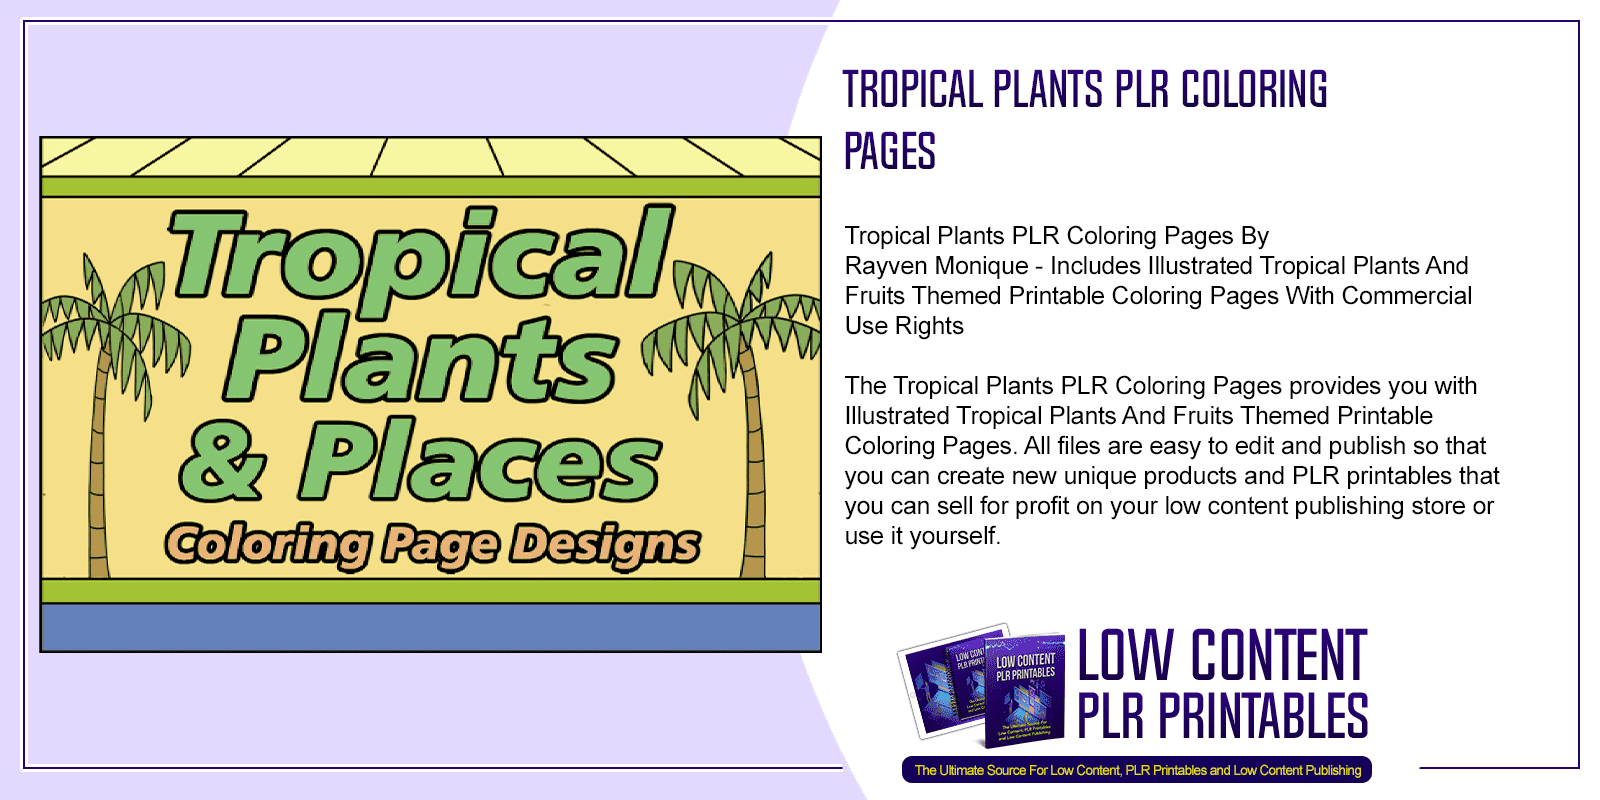 Tropical Plants PLR Coloring Pages